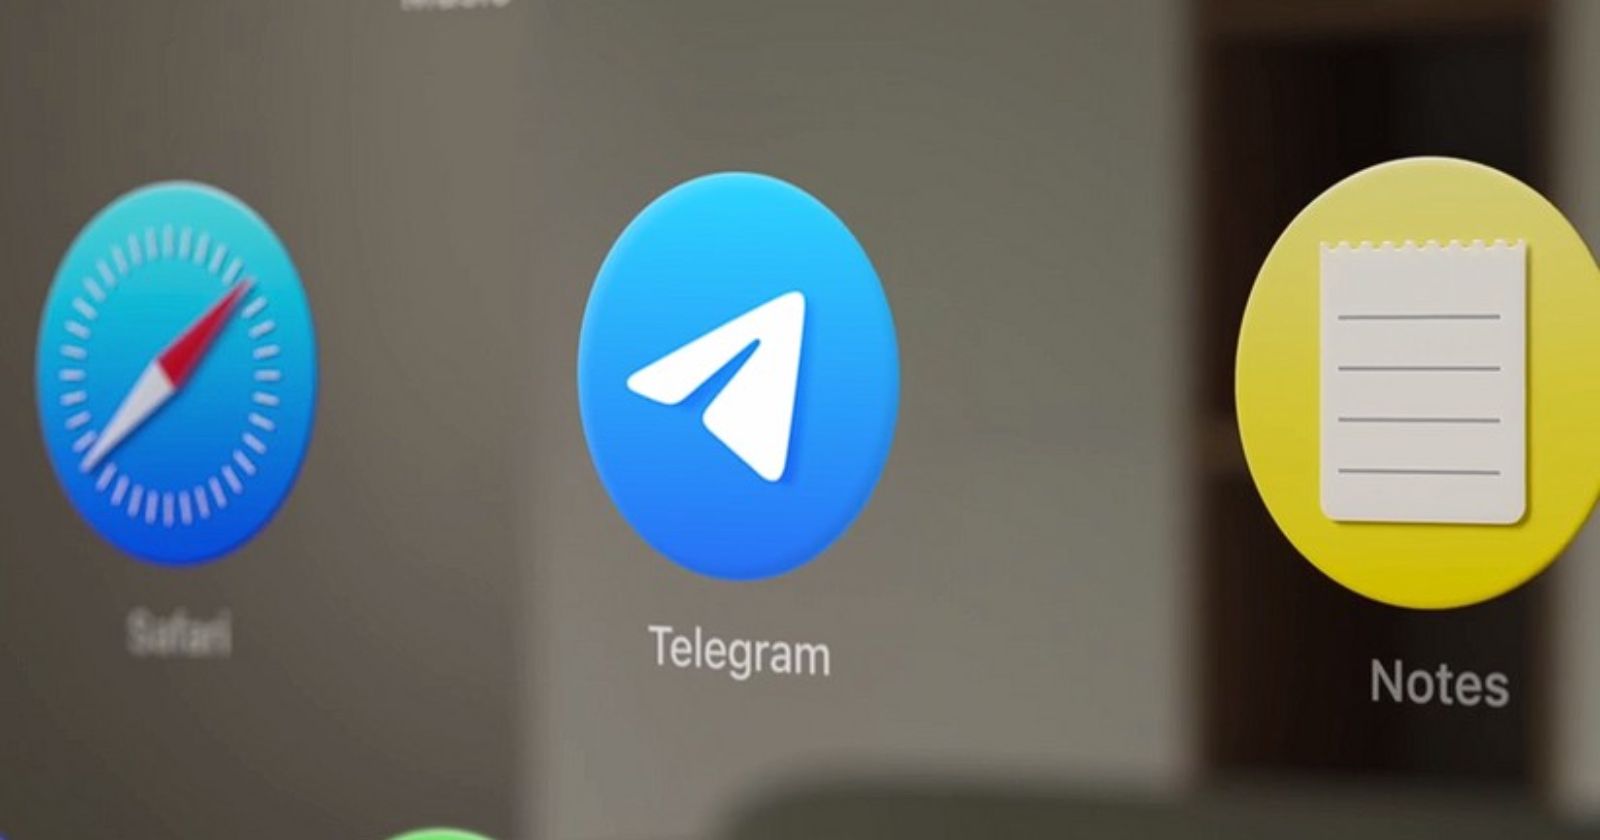 Павел Дуров показал как будет выглядеть Telegram в Apple Vision Pro